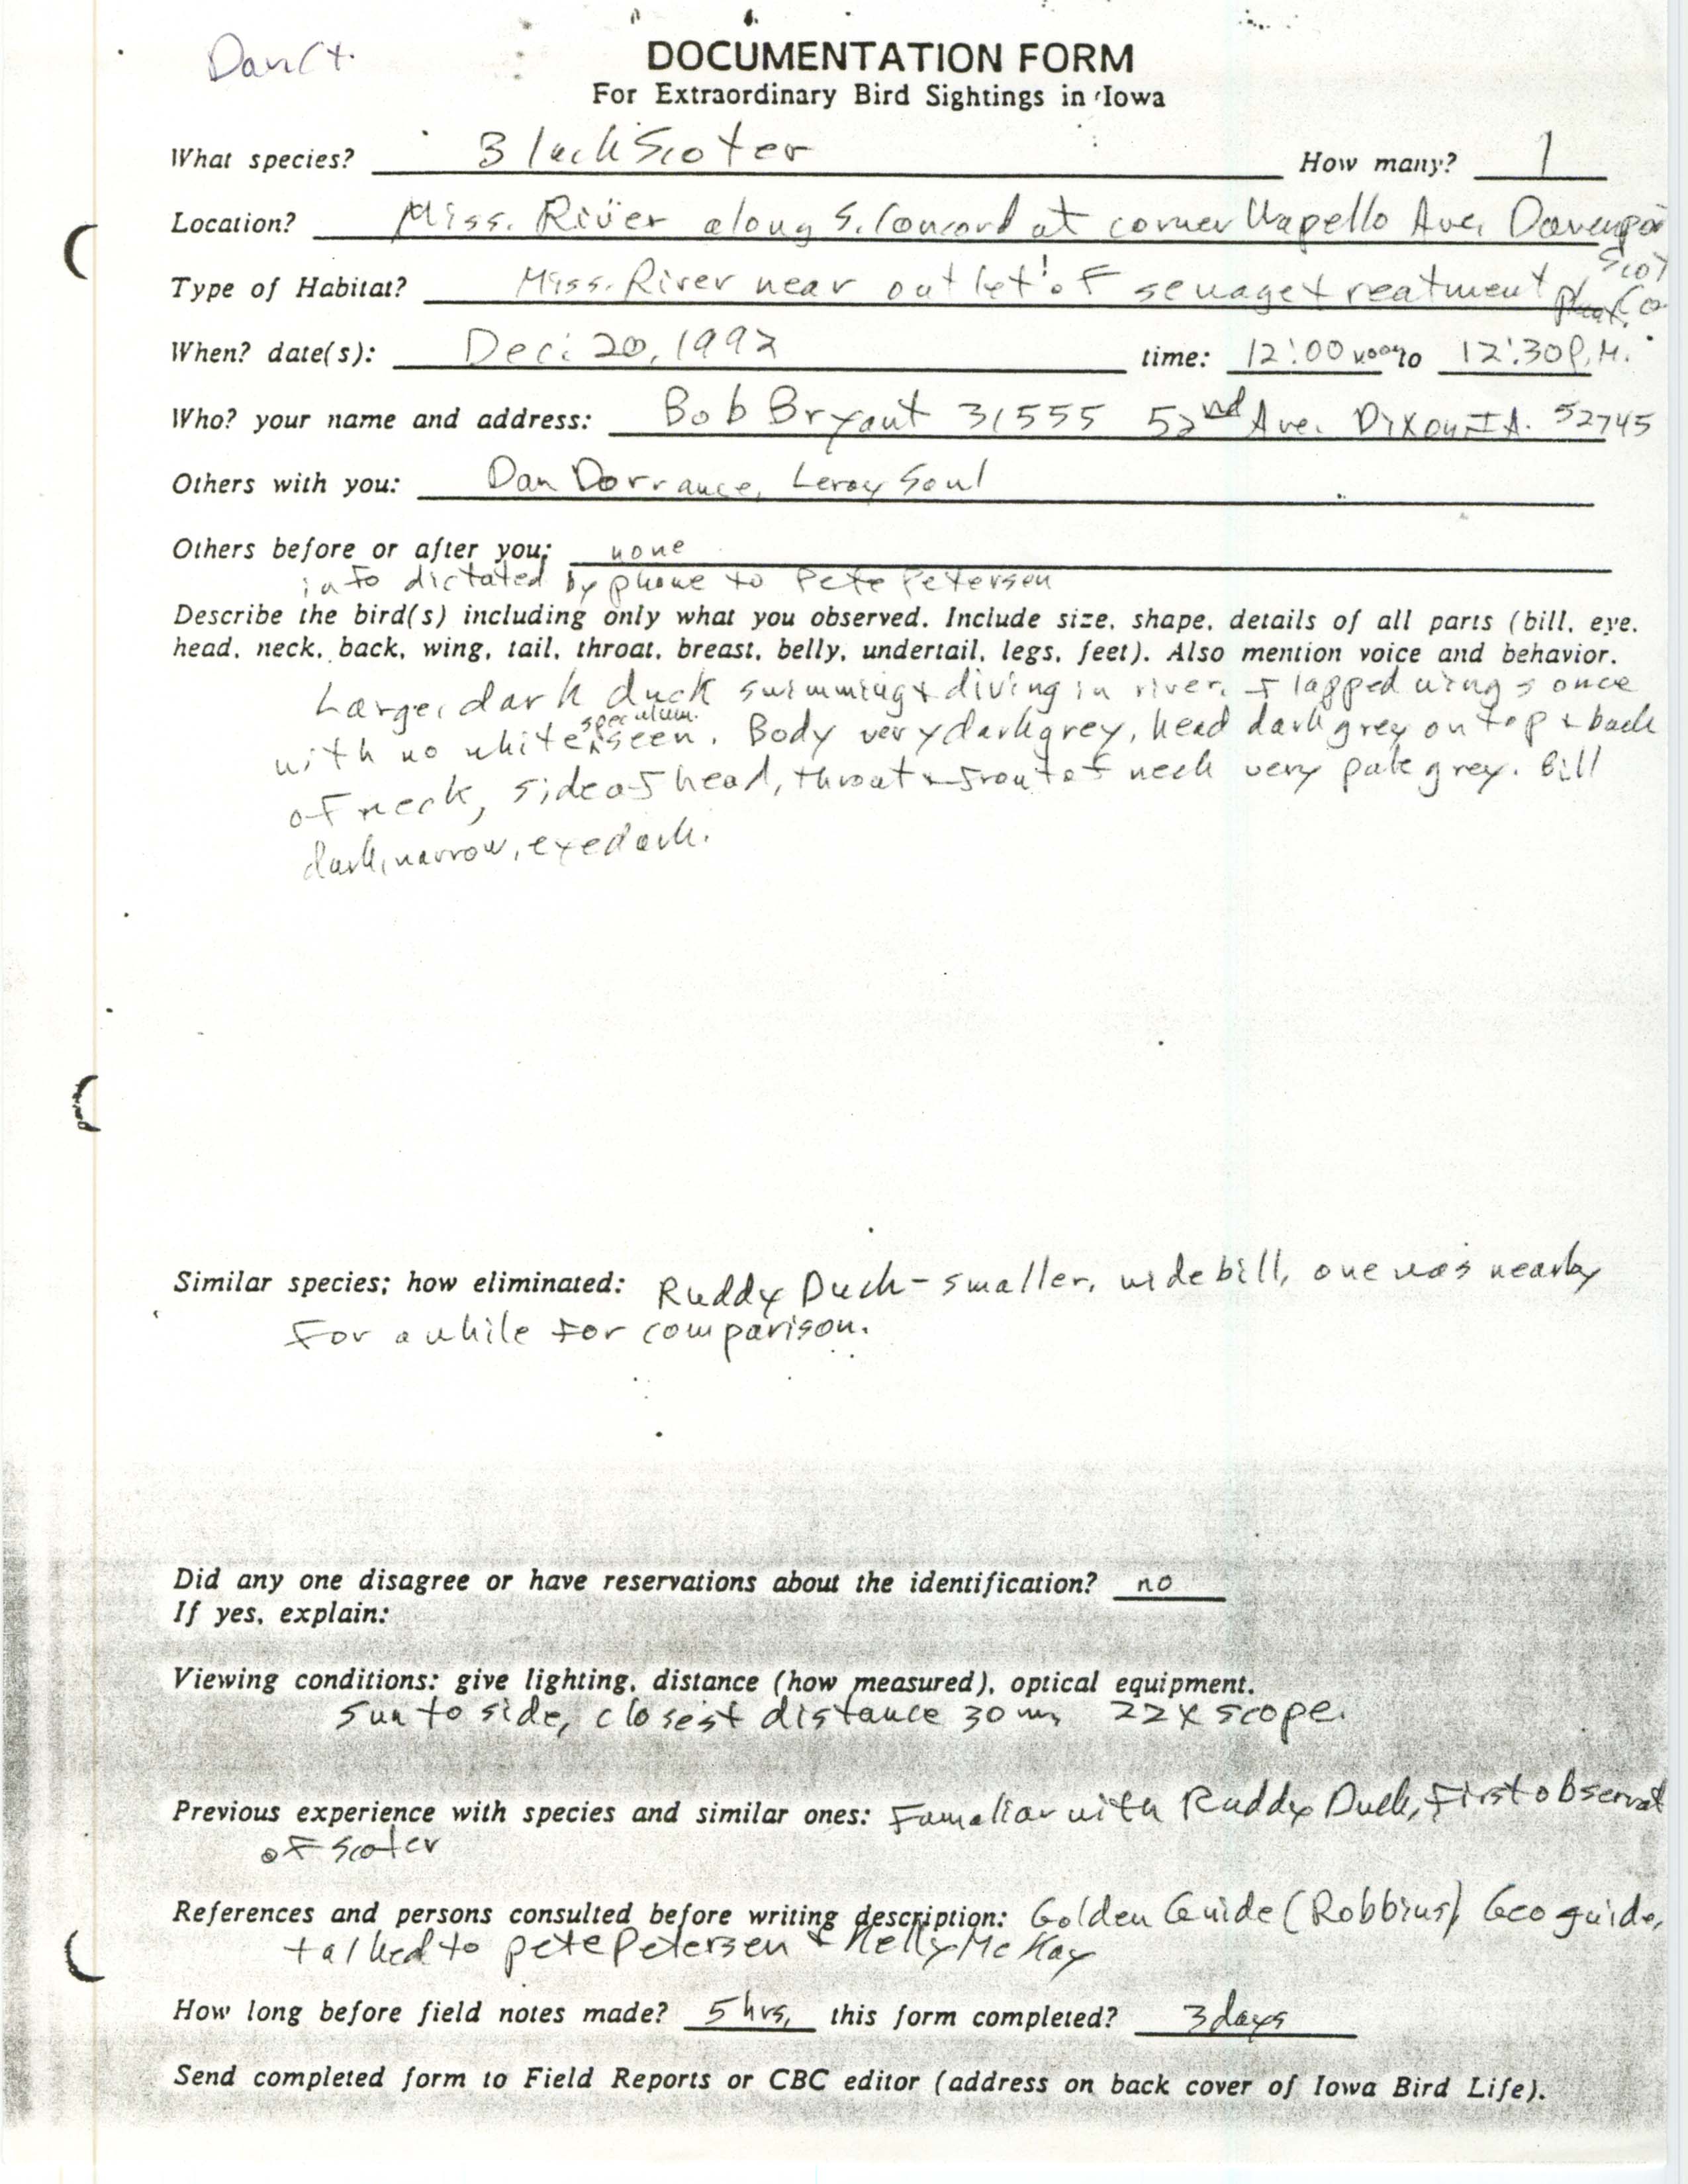 Rare bird documentation form for Black Scoter at Davenport, 1992